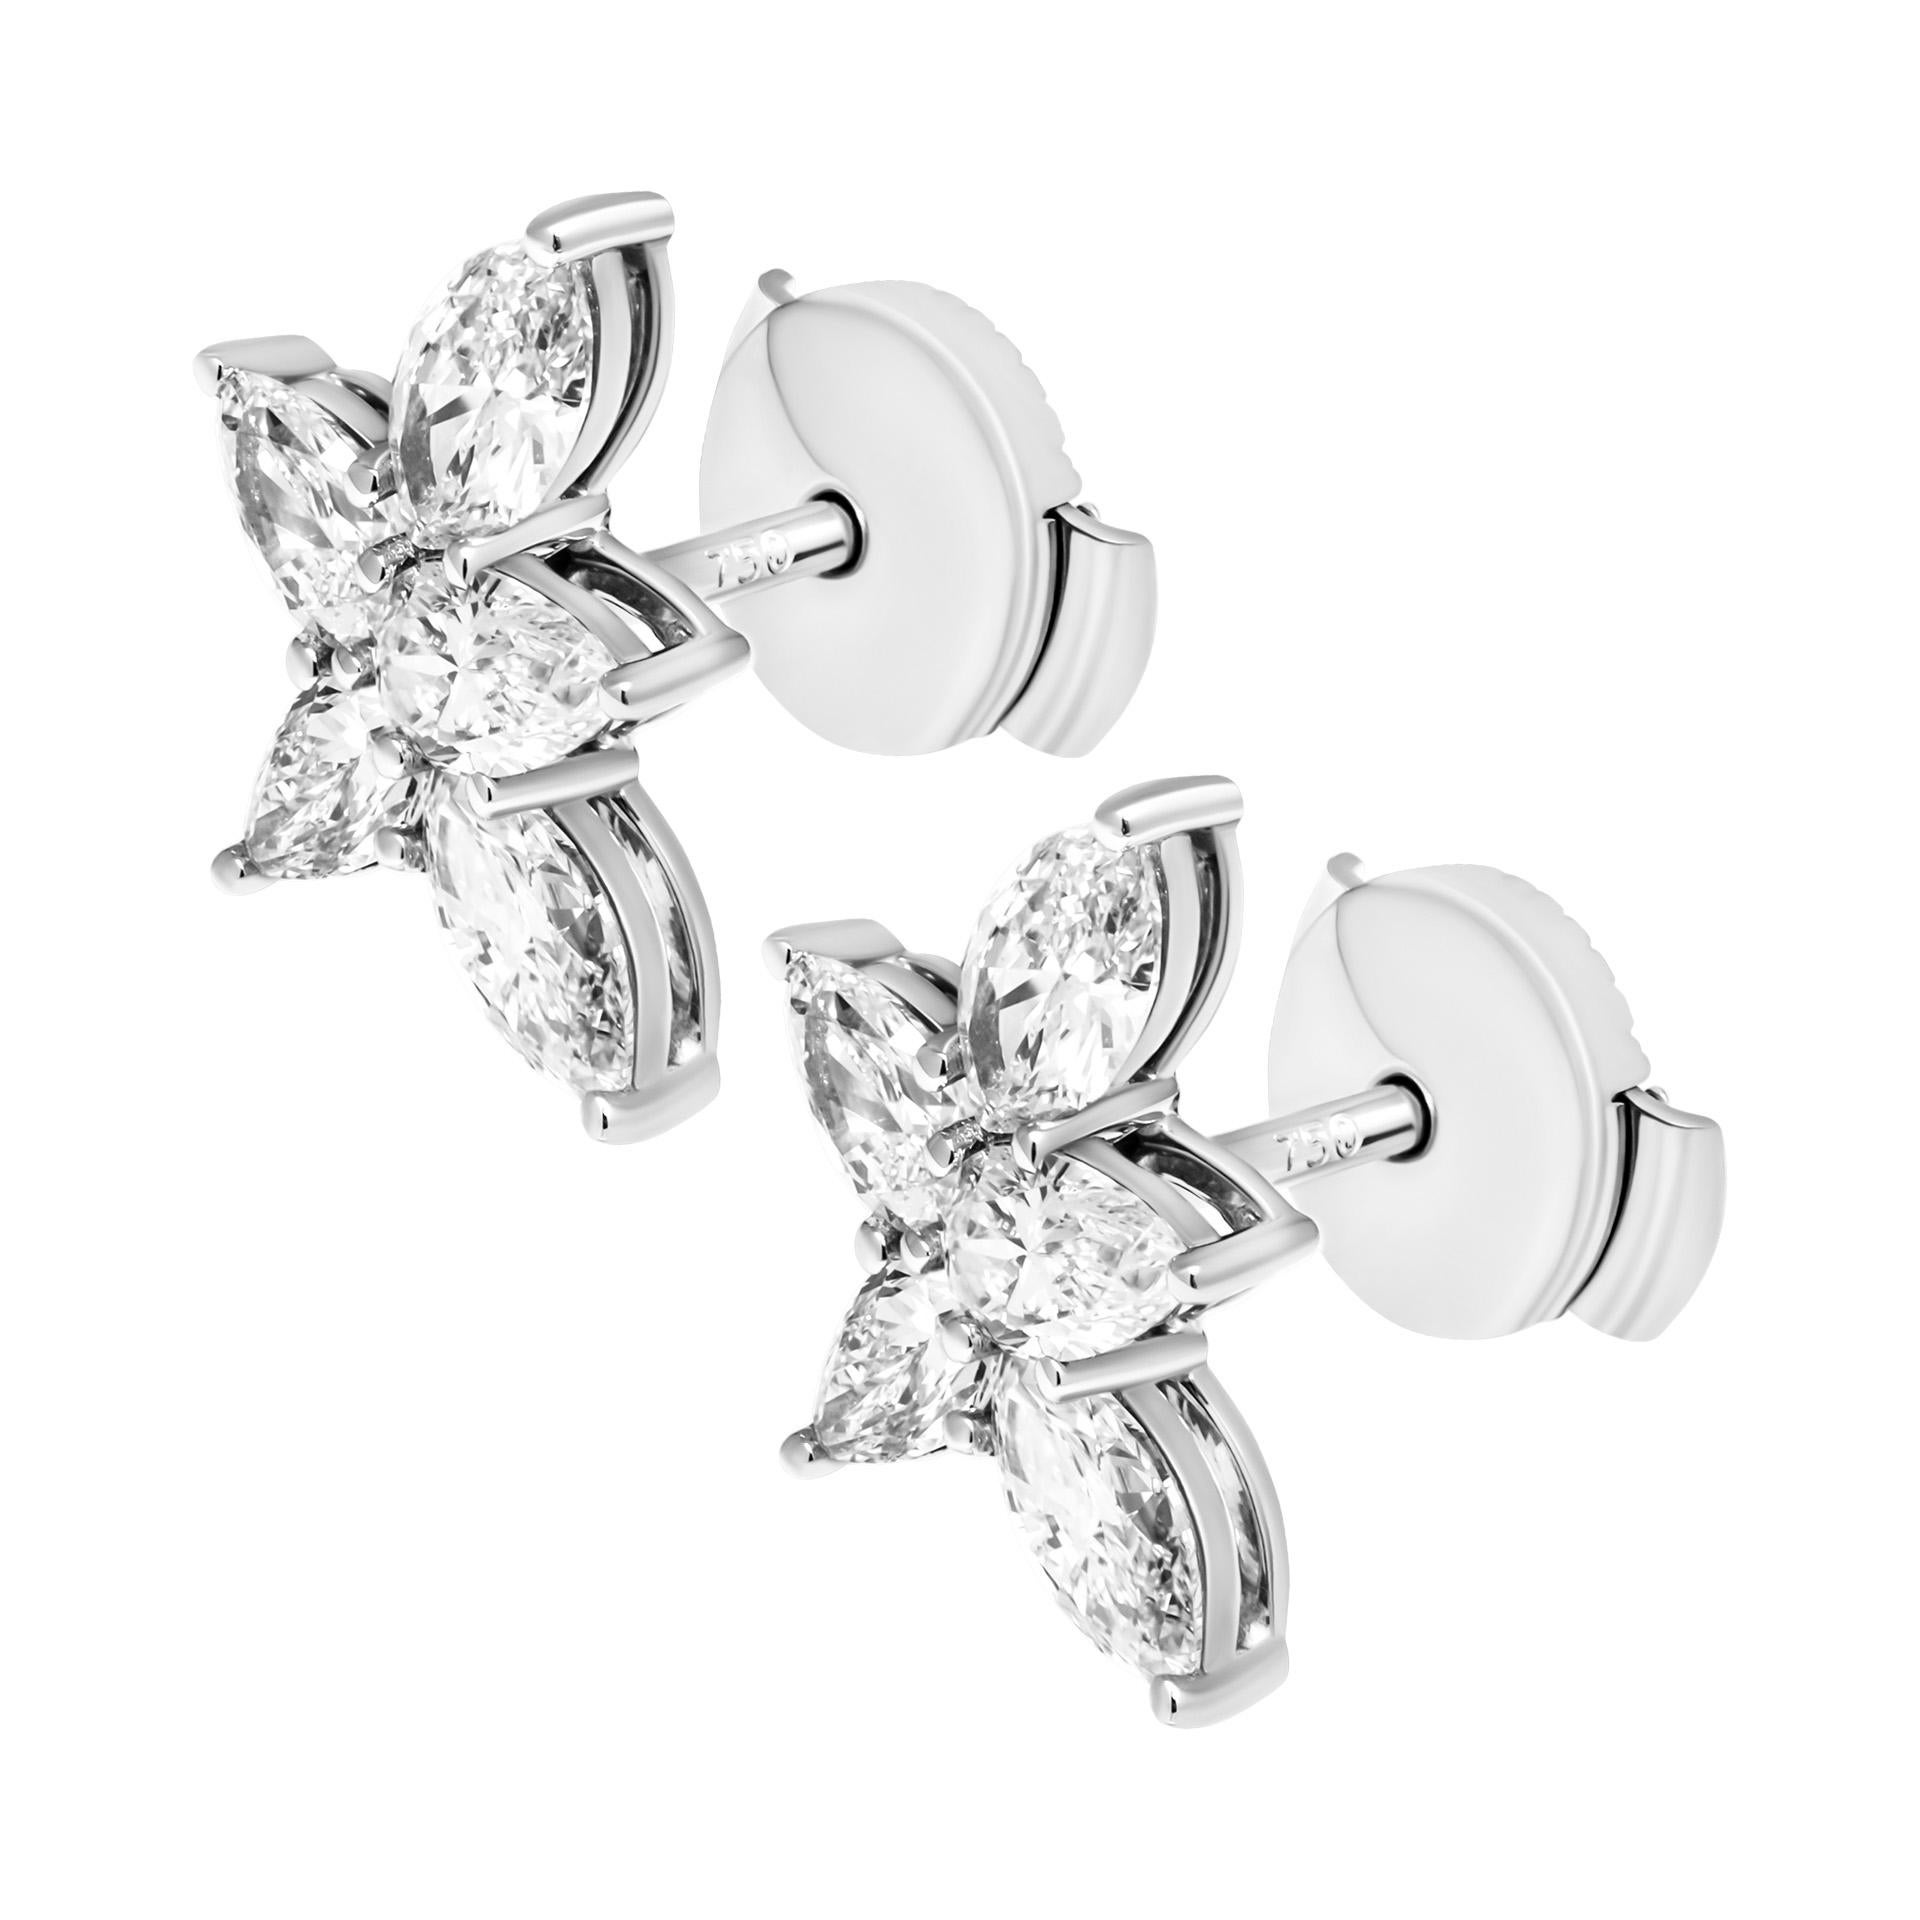 Modern Cluster Diamond Earrings in 18K White Gold 